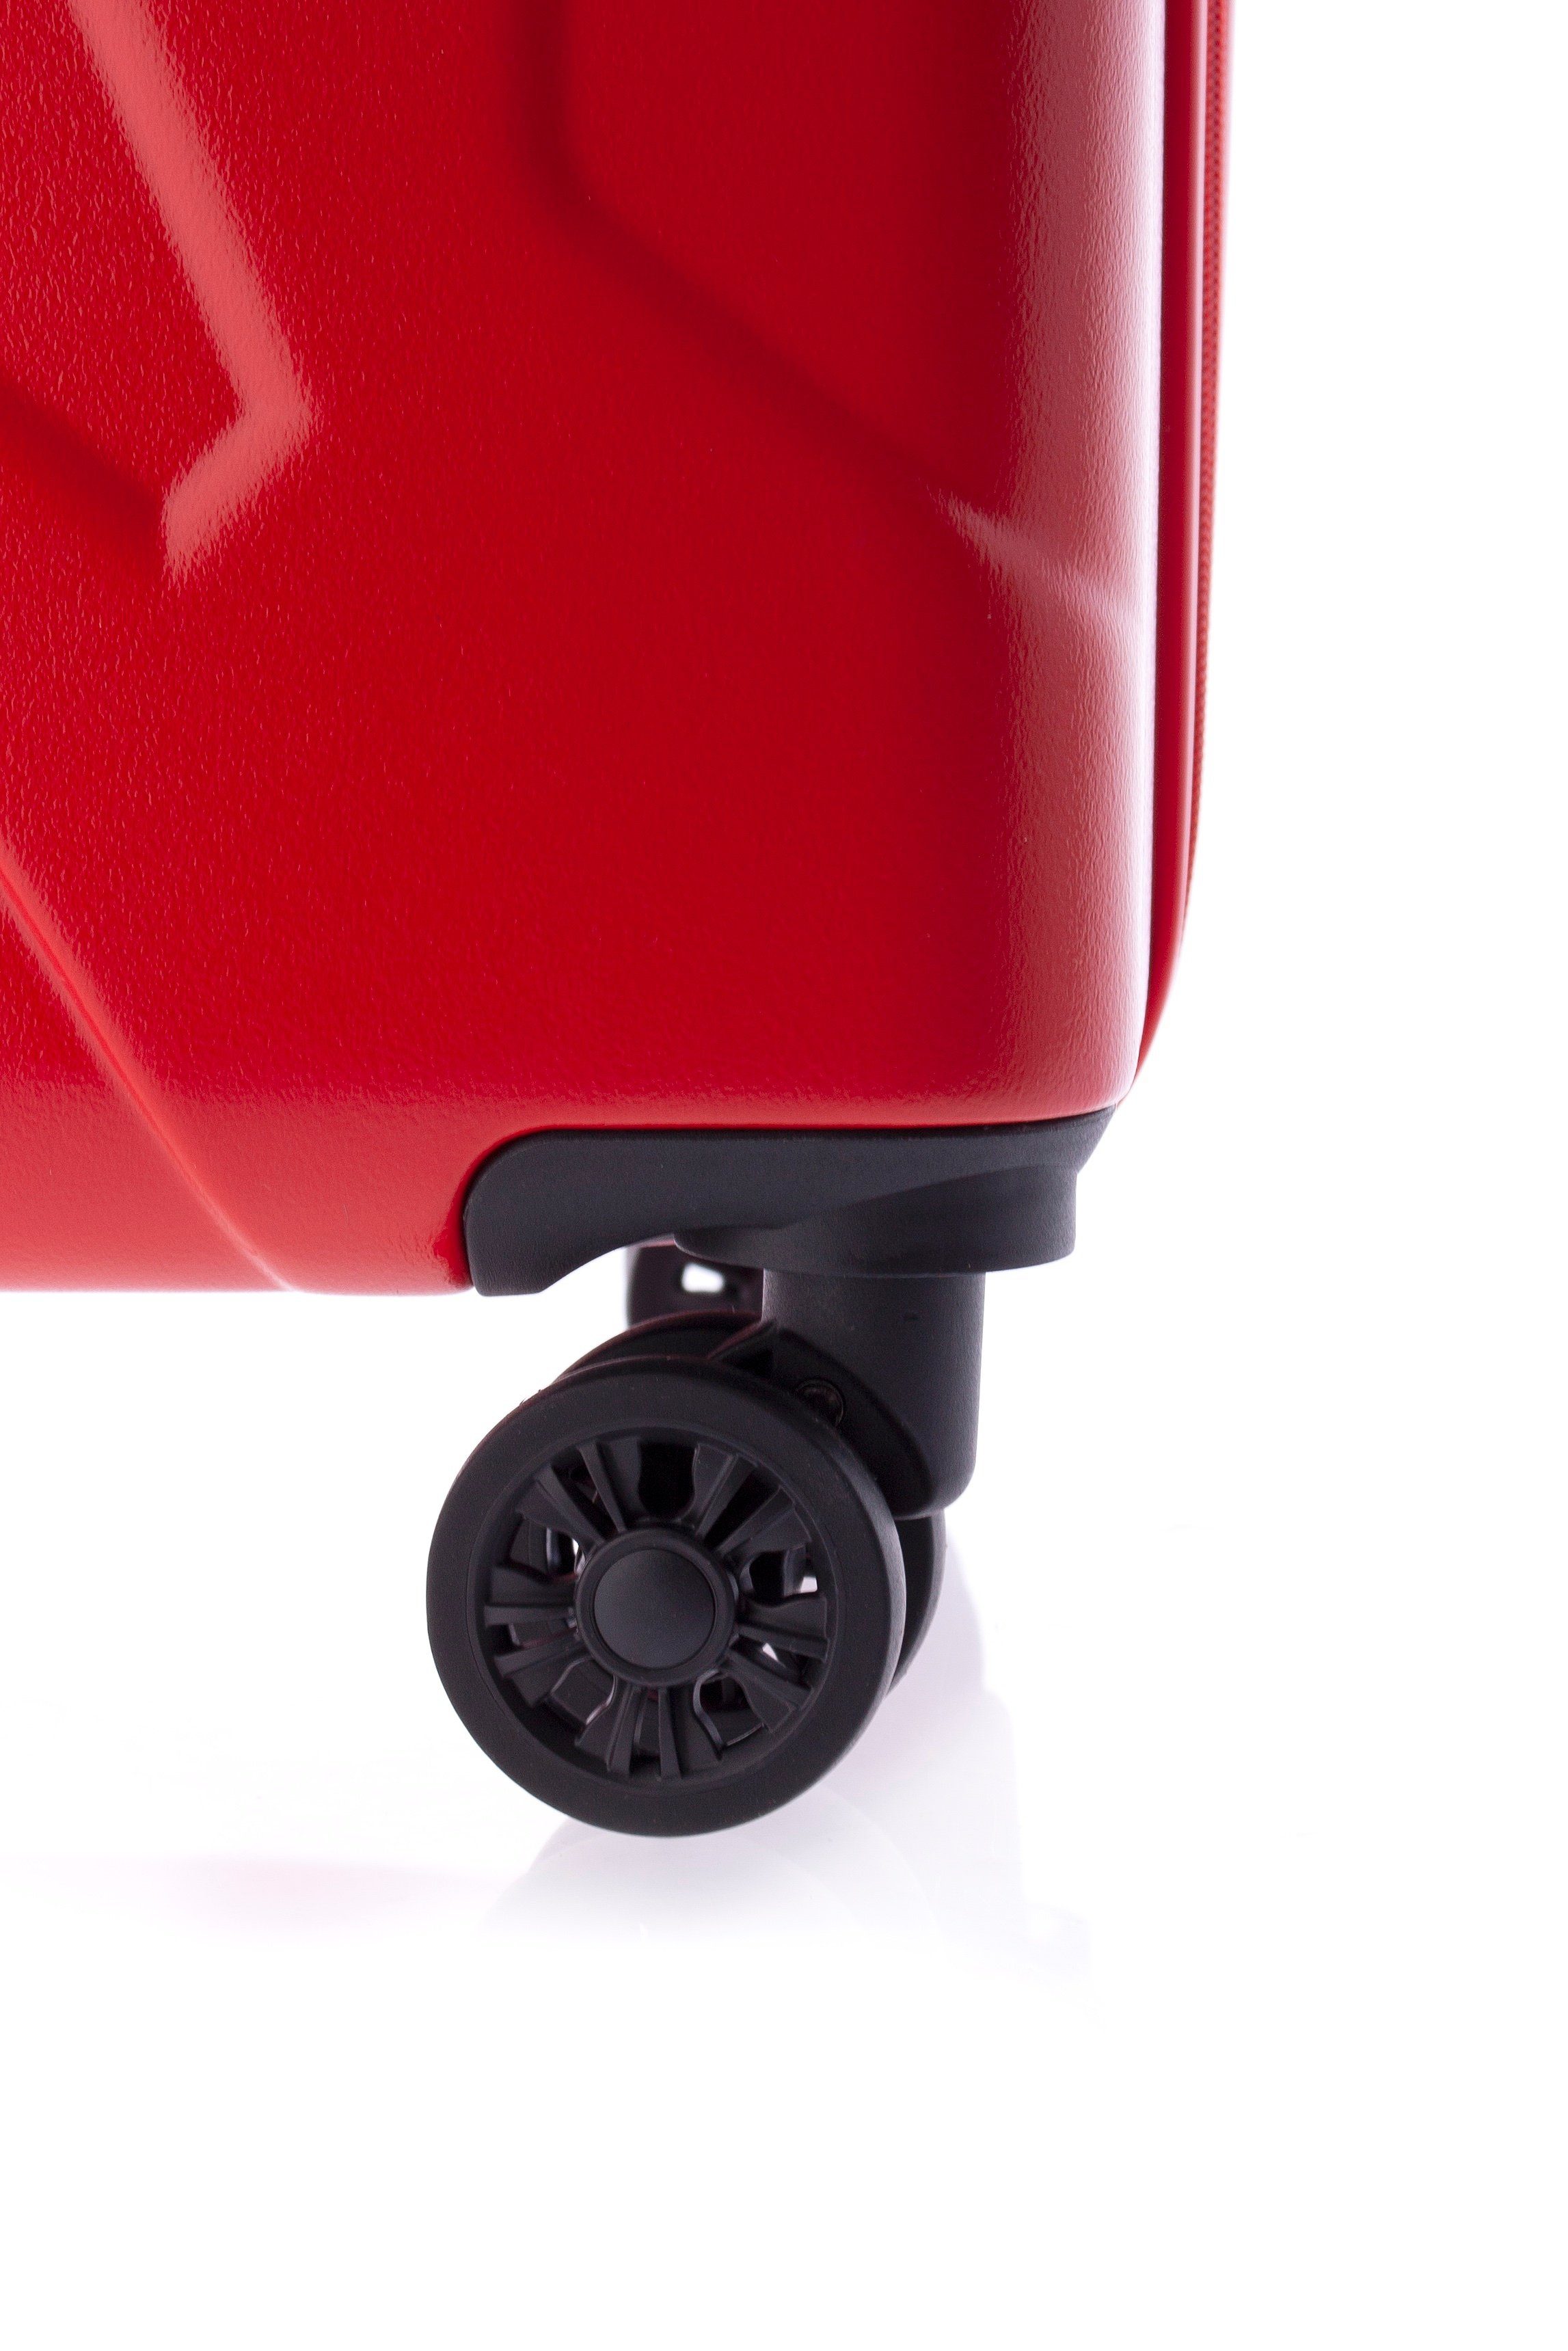 GLADIATOR Hartschalen-Trolley Koffer XL-78 cm, TSA, rot 3,8kg, Rollen 4 4 Farben